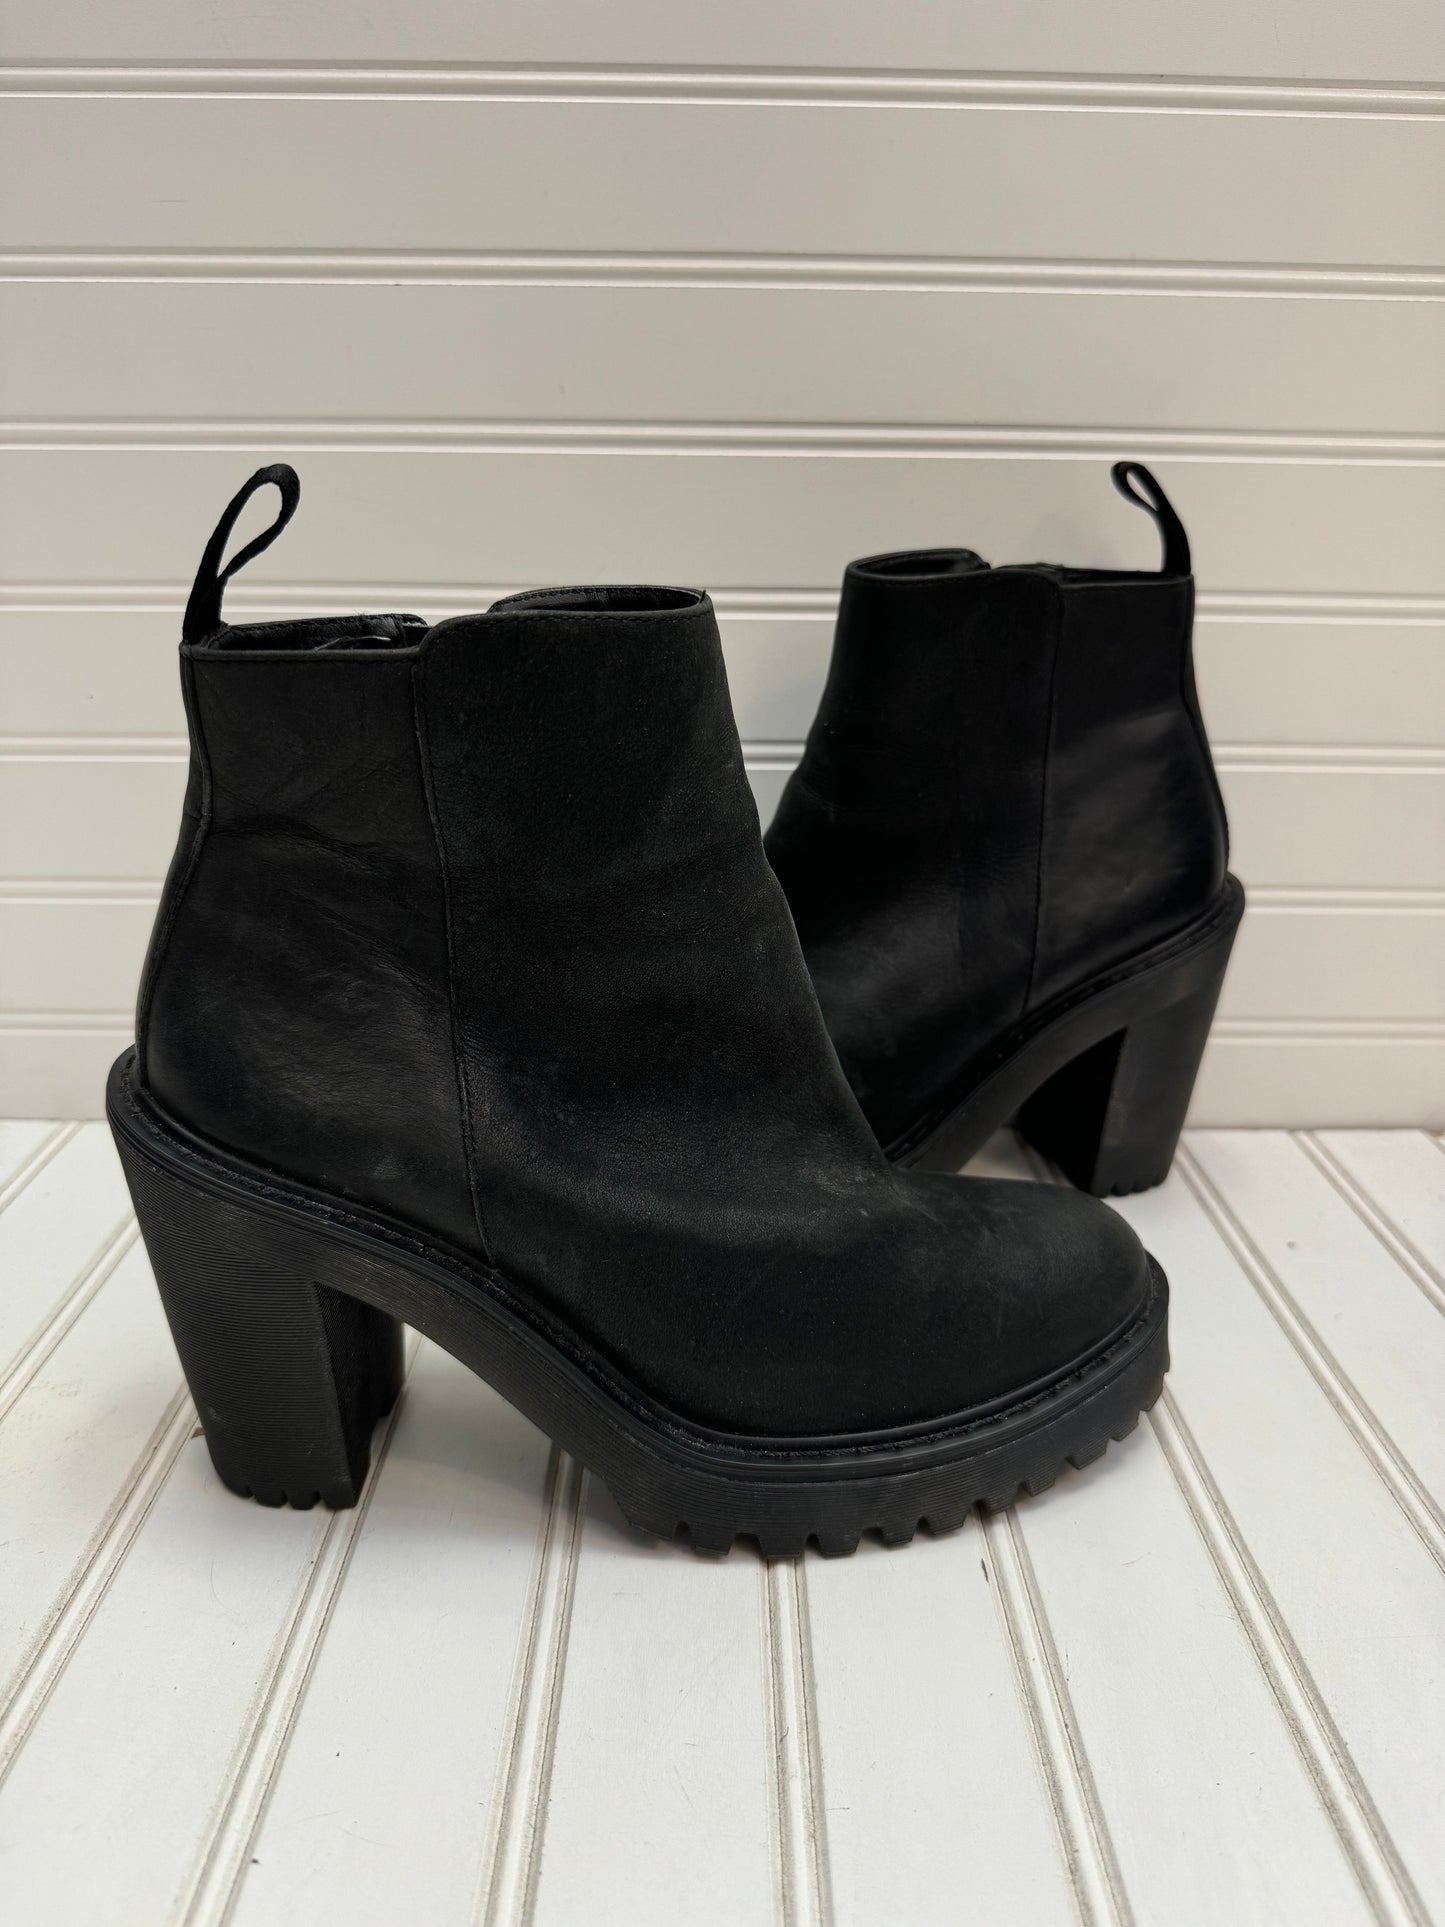 Black Boots Ankle Heels Dr Martens, Size 8